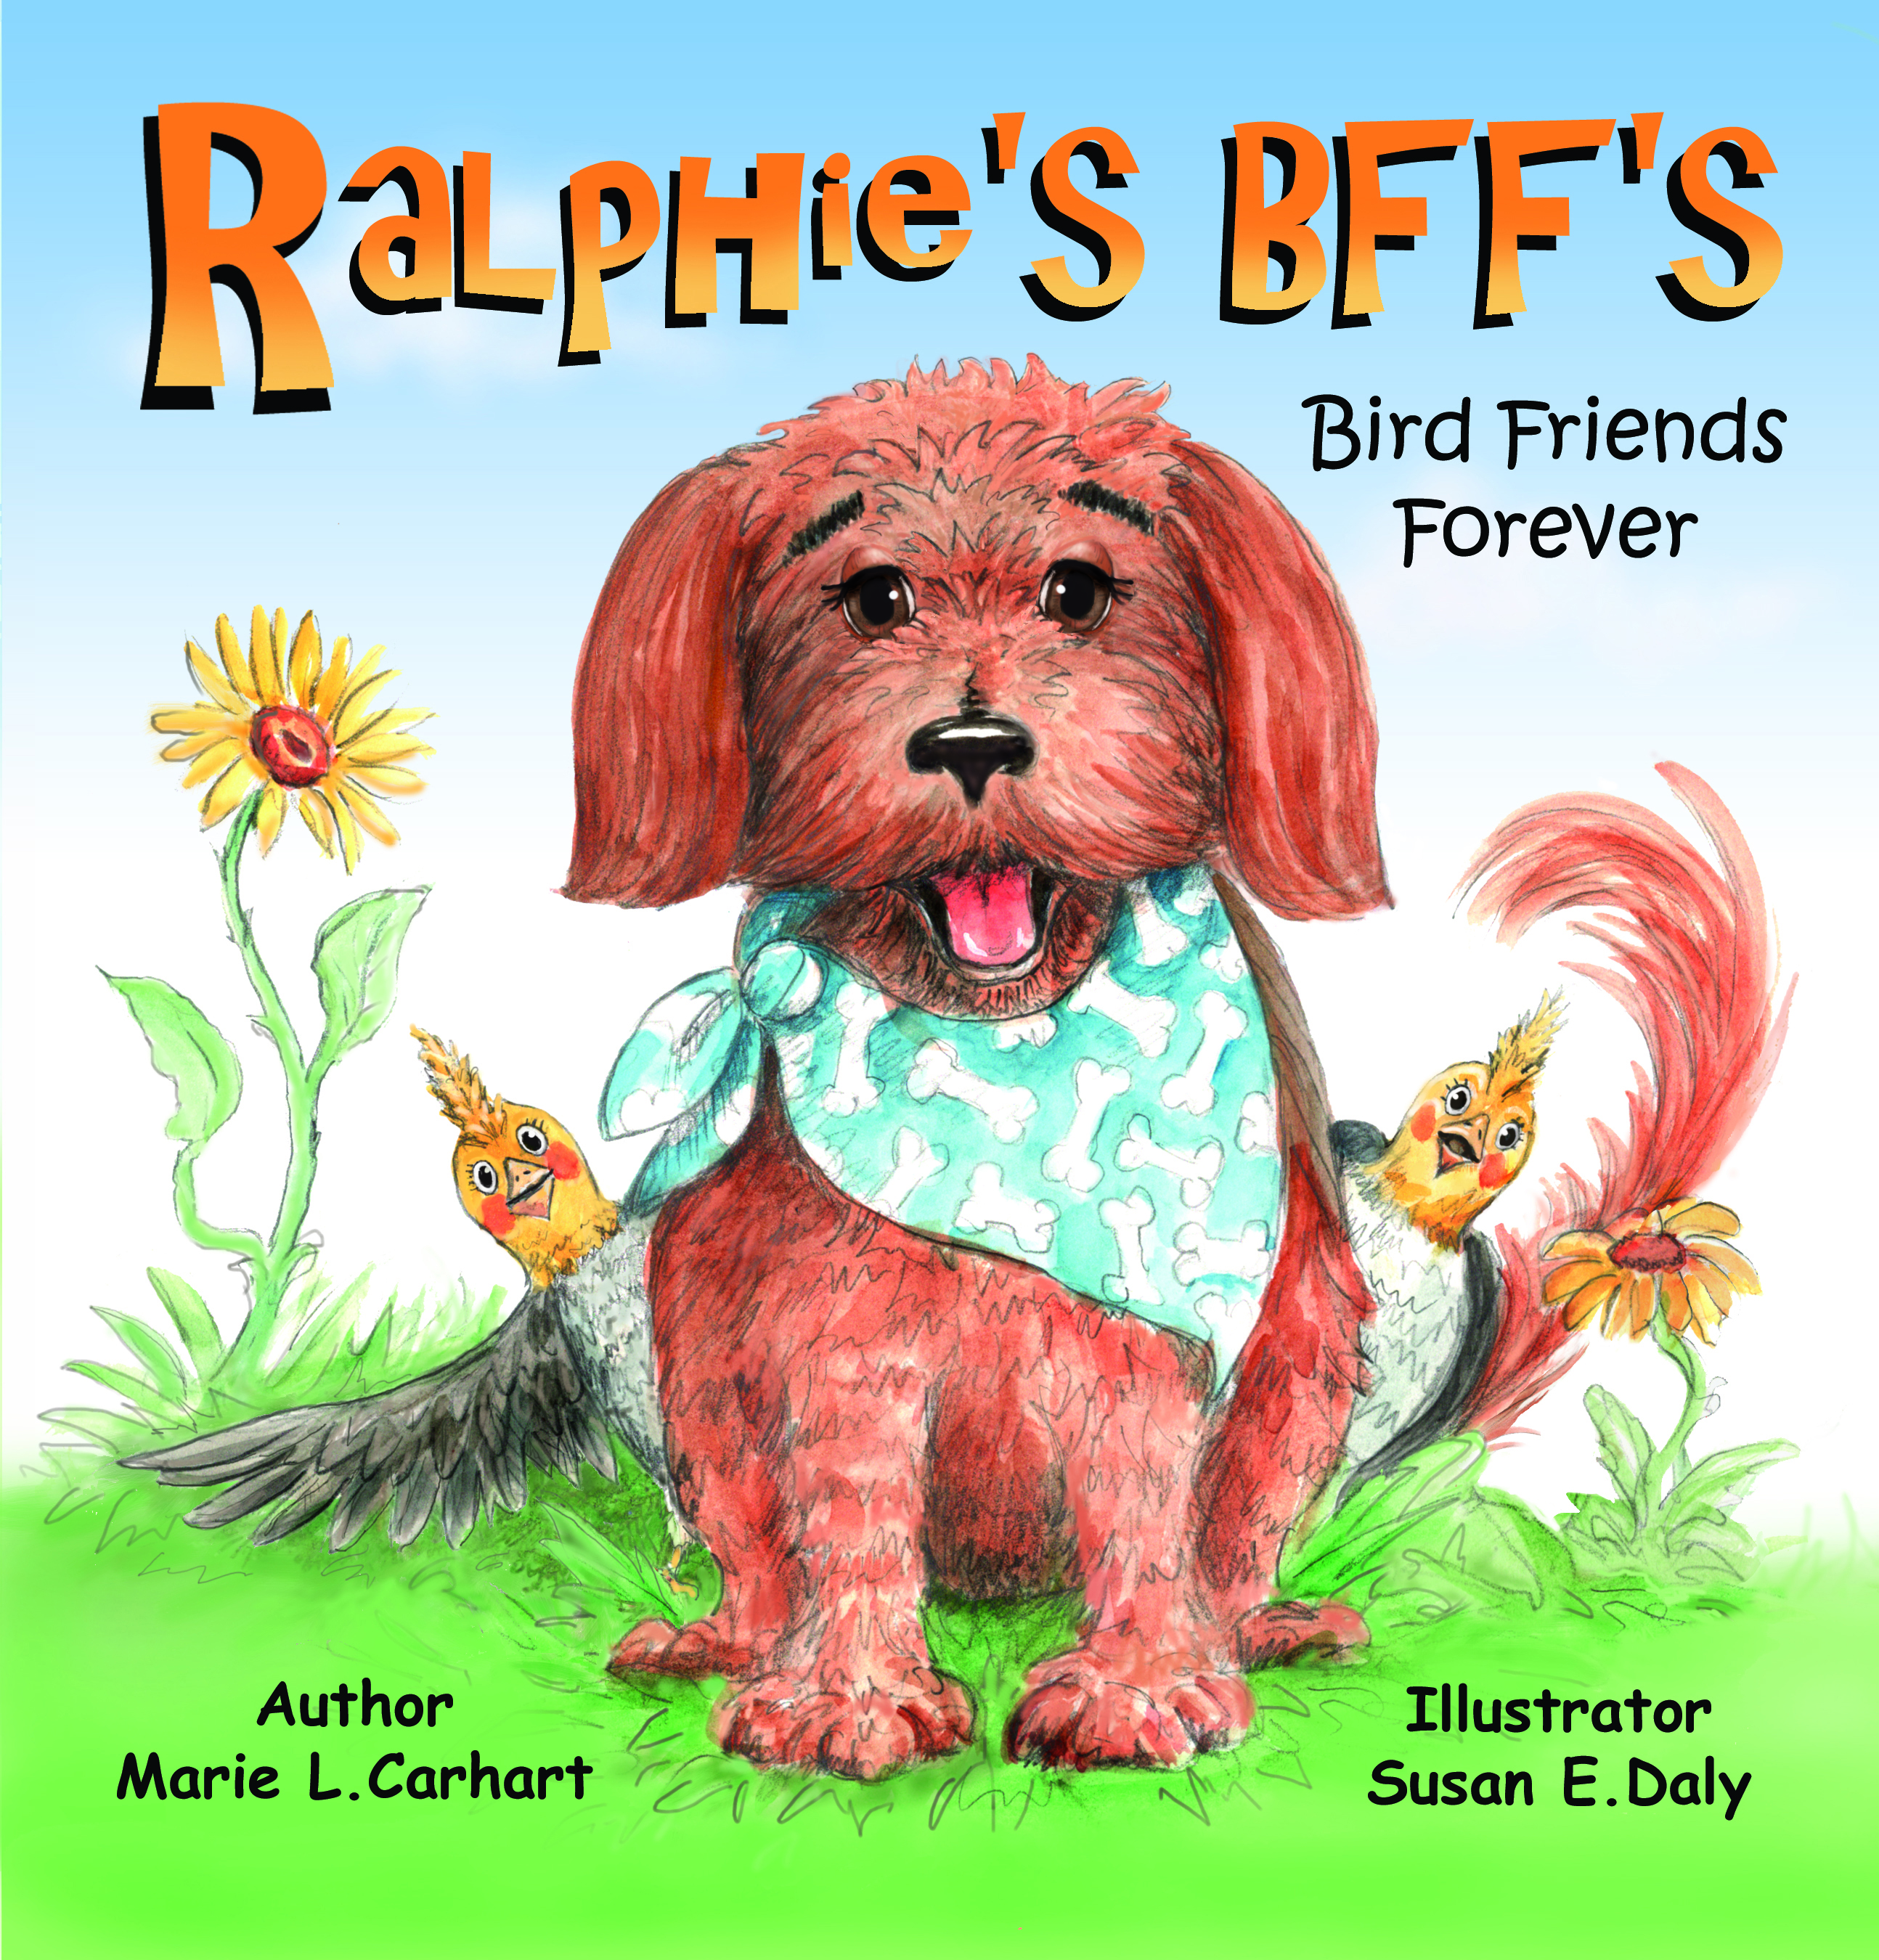 Ralphie's Bff's